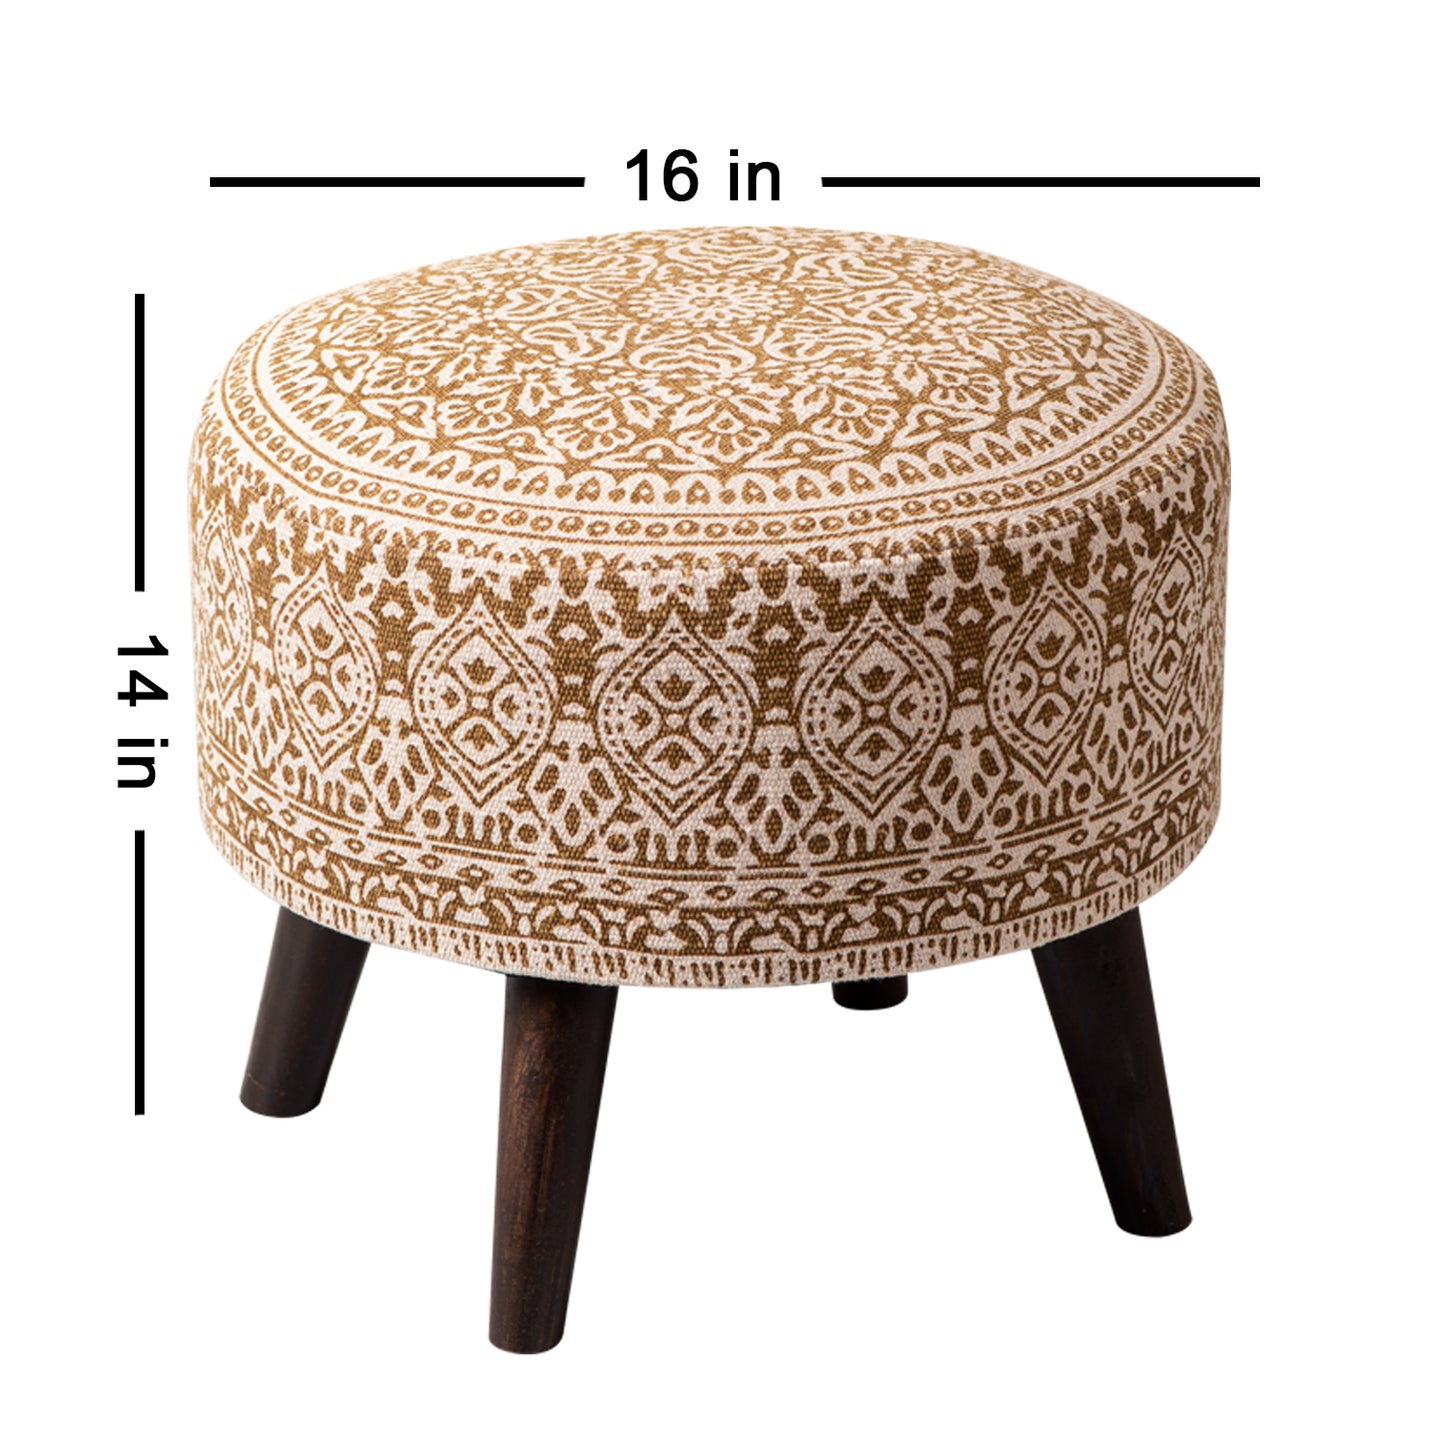 stool for living room